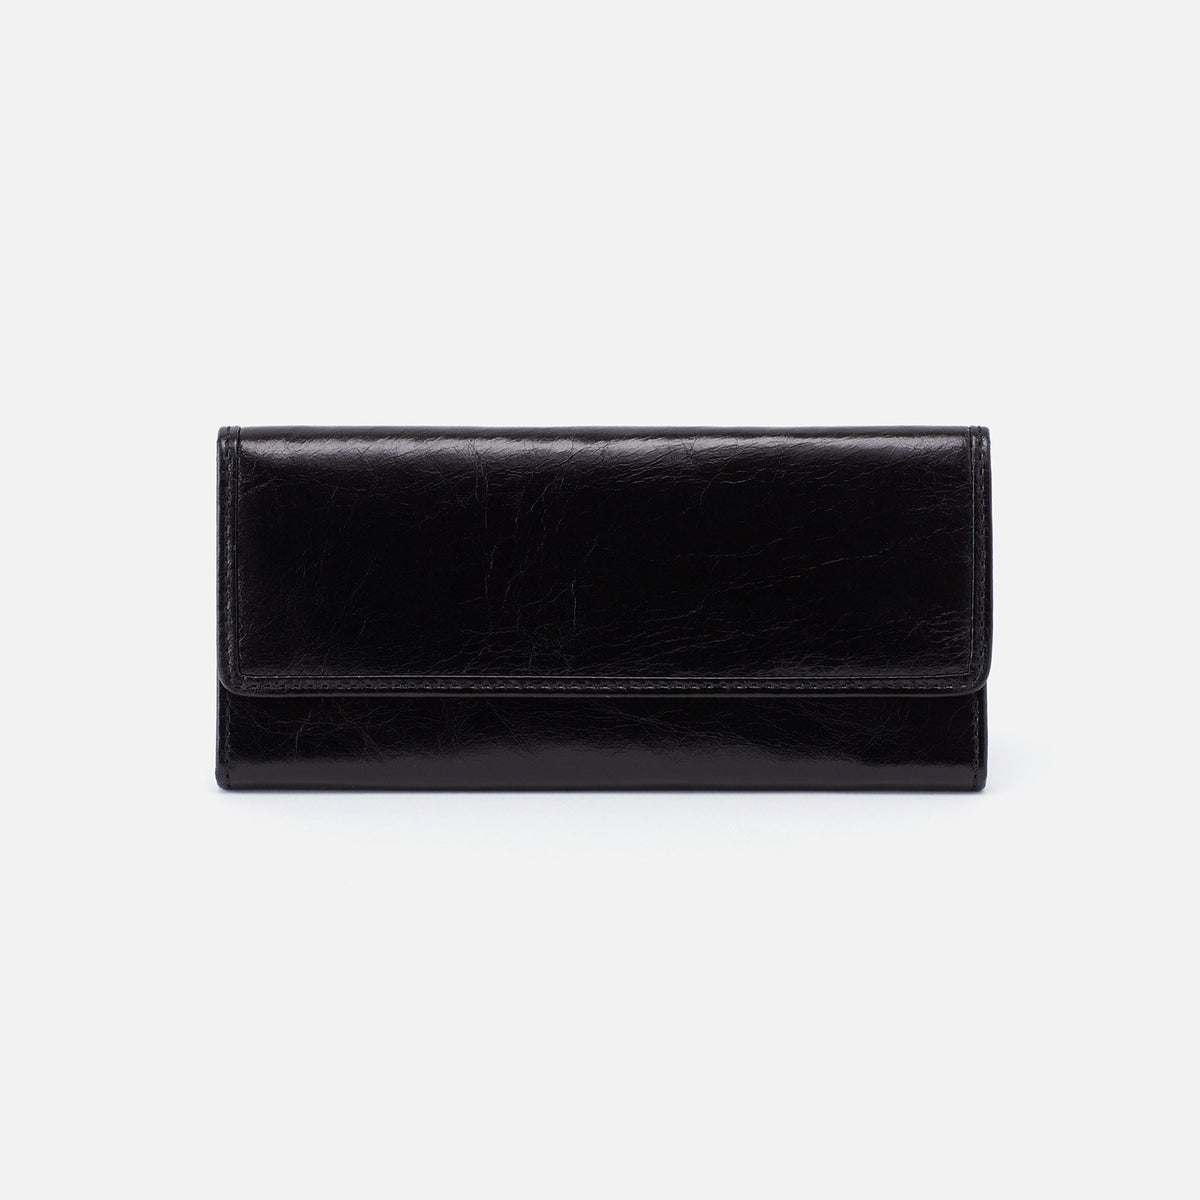 ARDOR Continental Wallet - Black